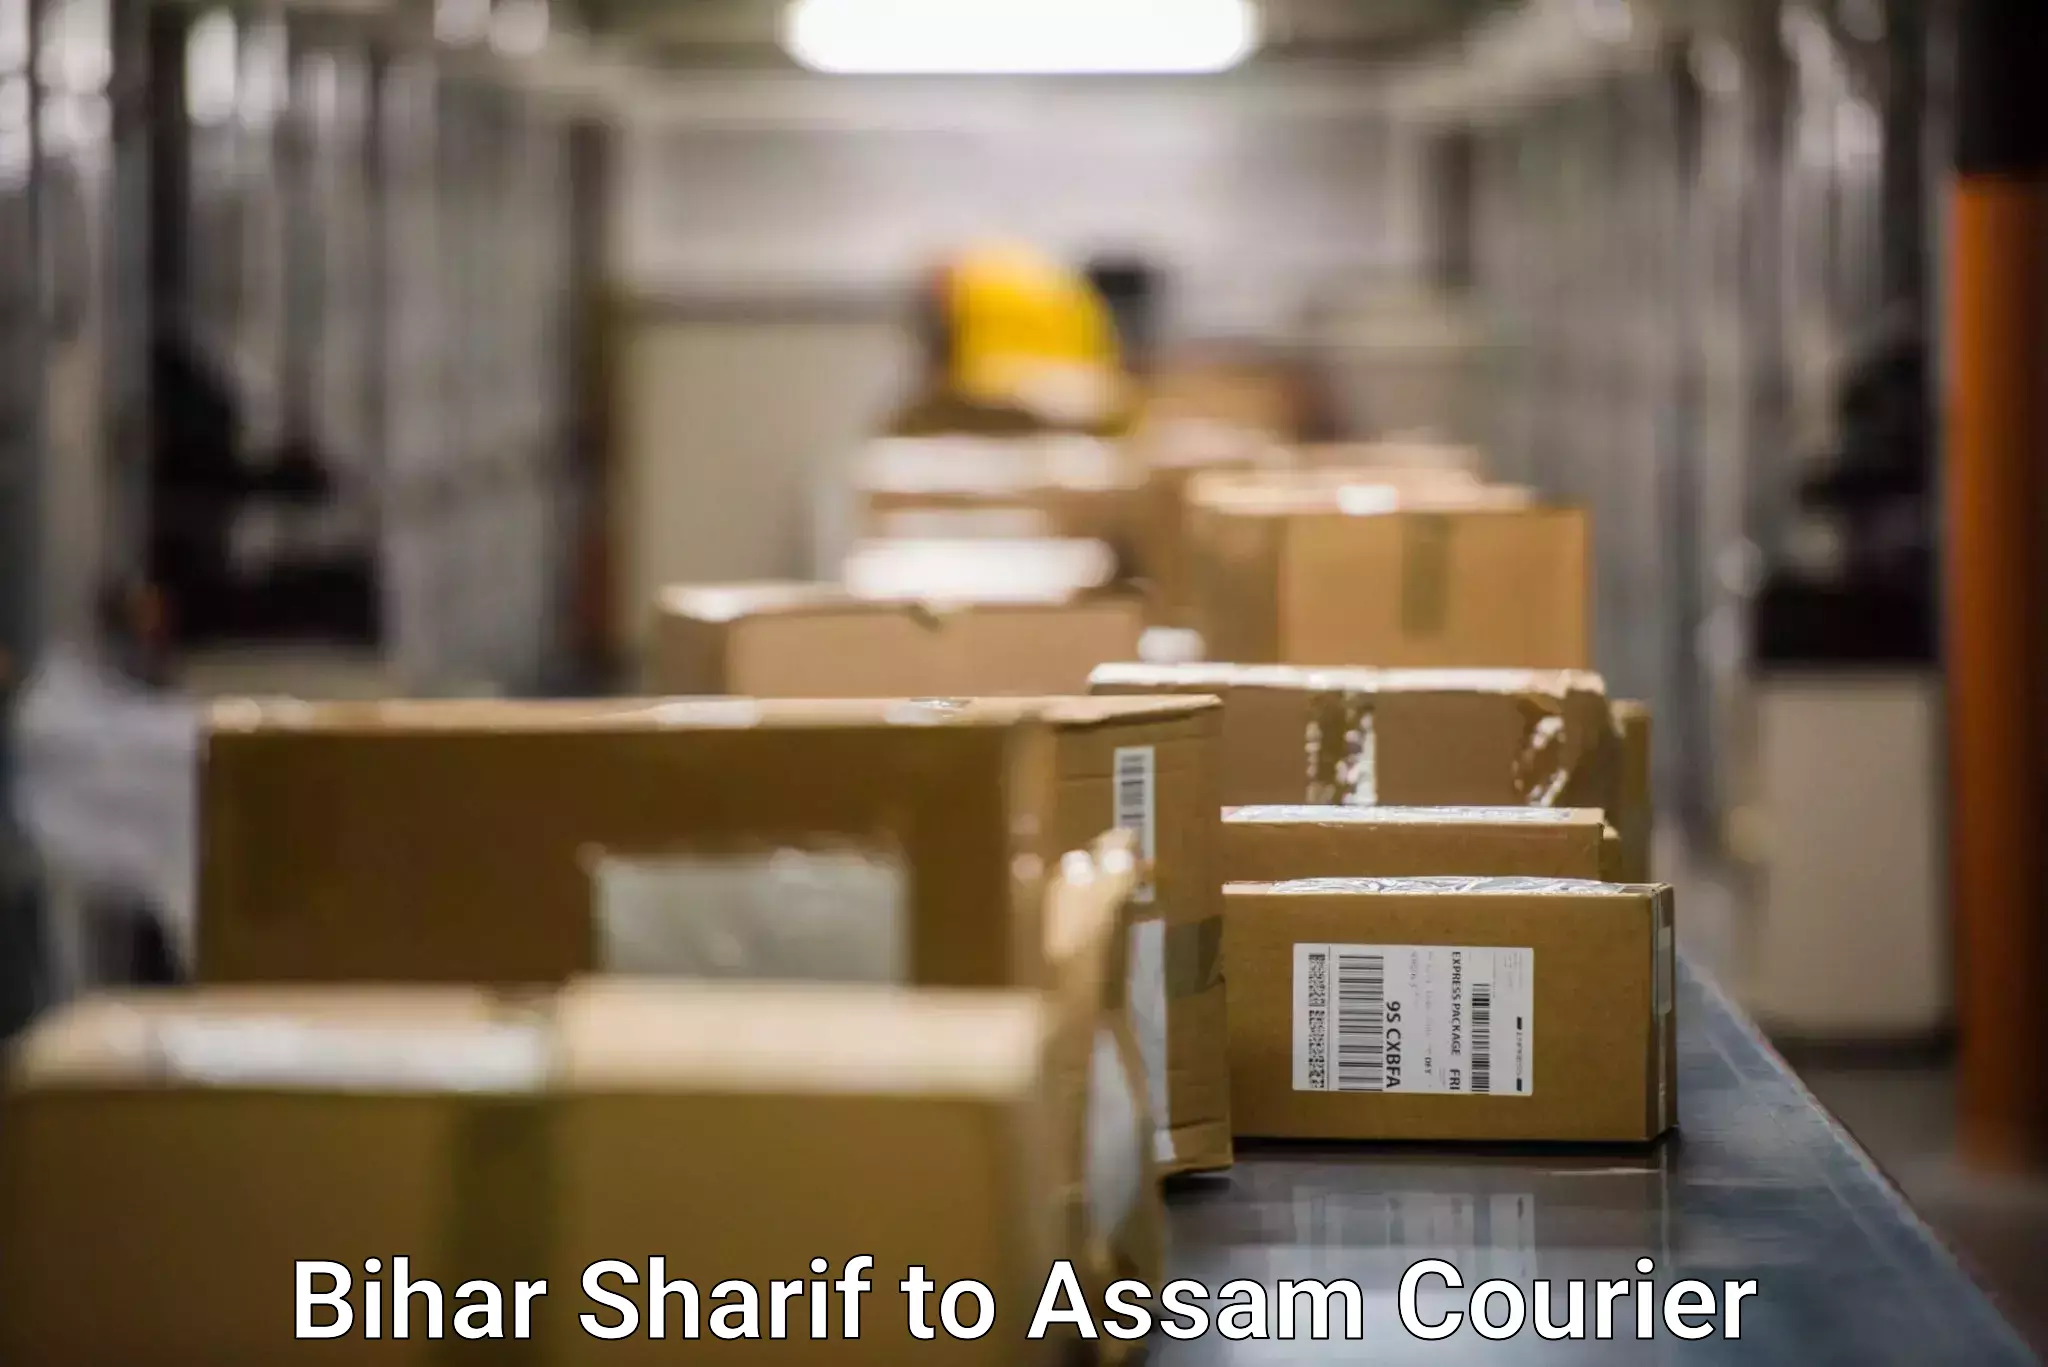 Comprehensive freight services Bihar Sharif to Assam